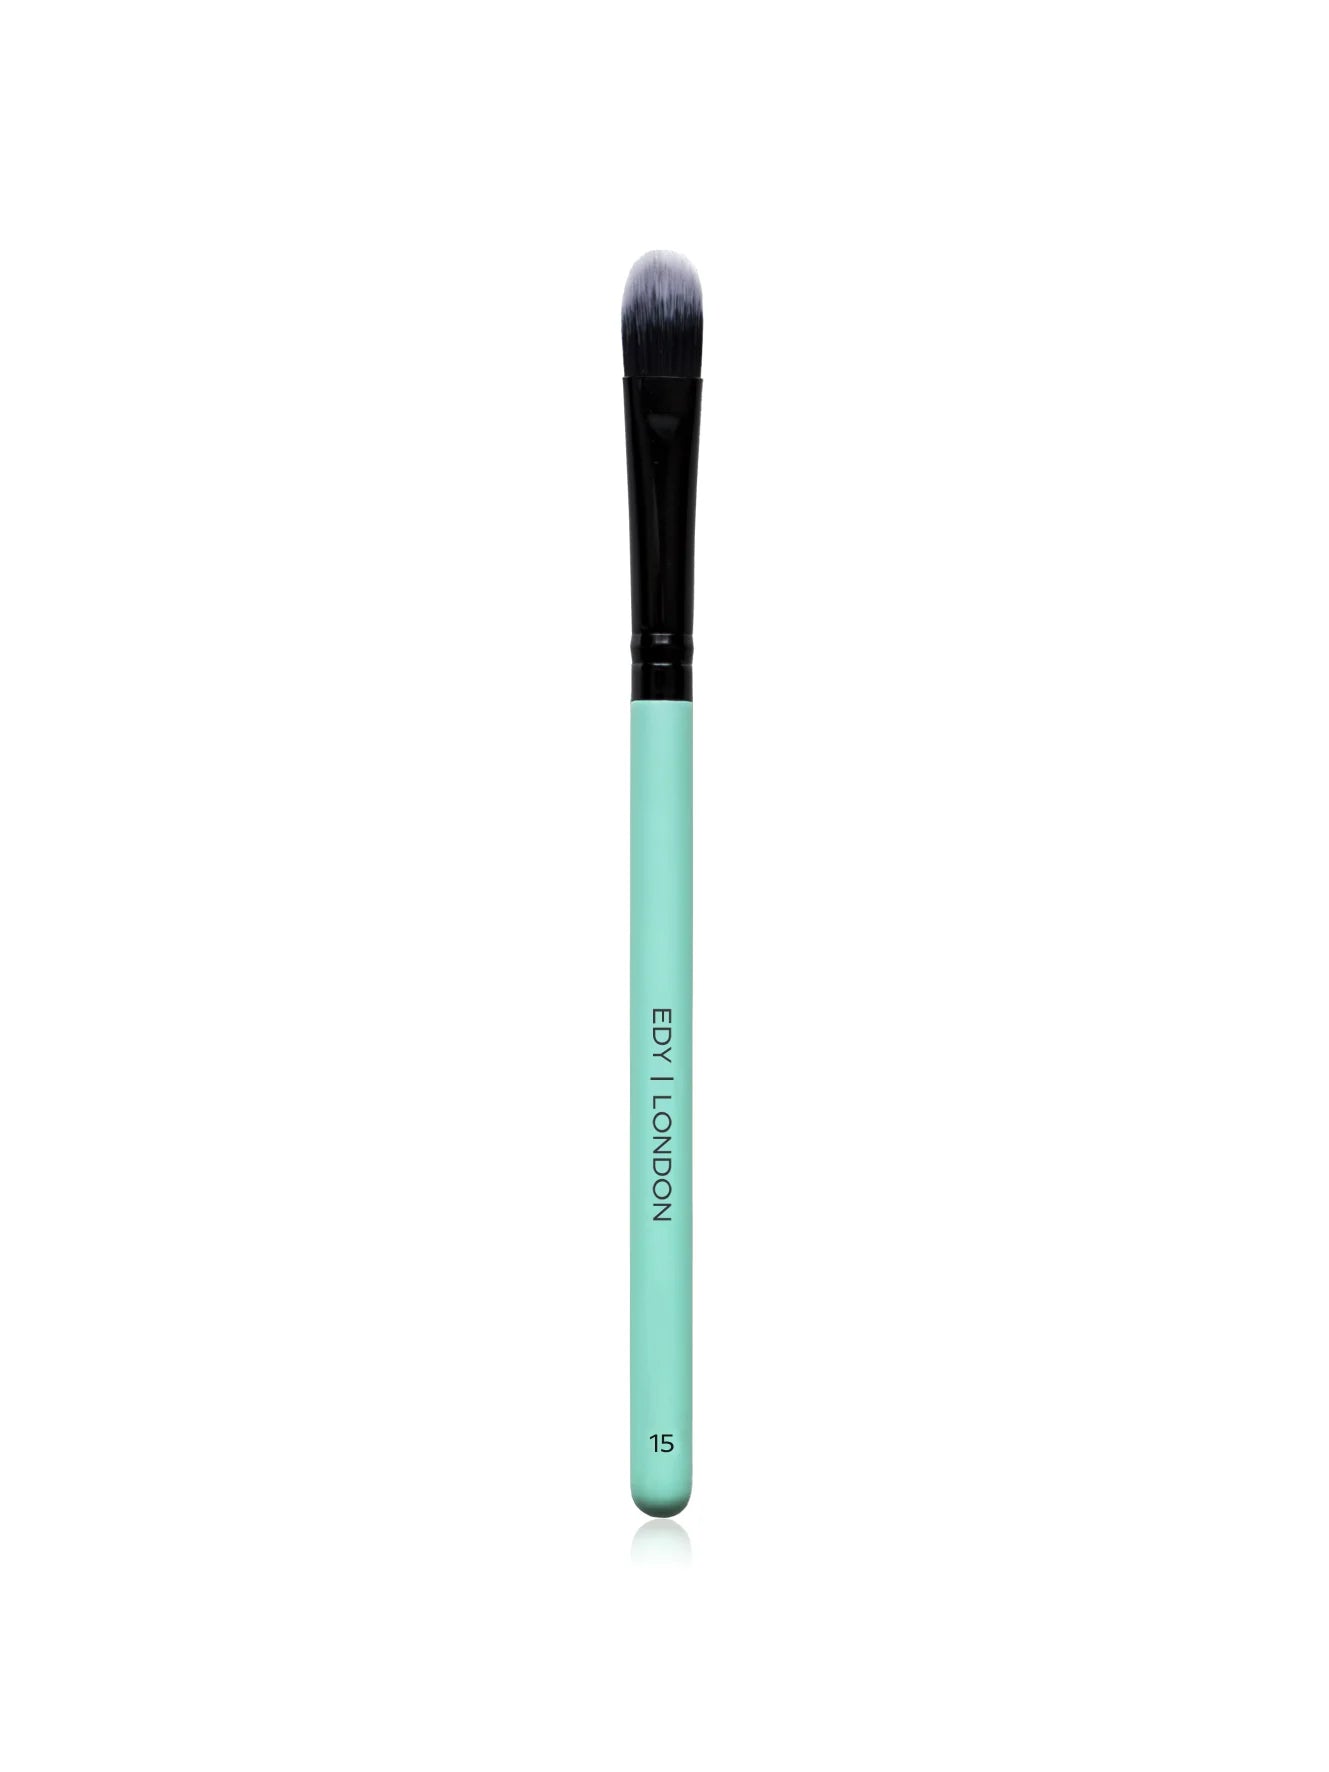 Large Shader Brush 15 Make-up Brush EDY LONDON Turquoise   - EDY LONDON PRODUCTS UK - The Best Makeup Brushes - shop.edy.london